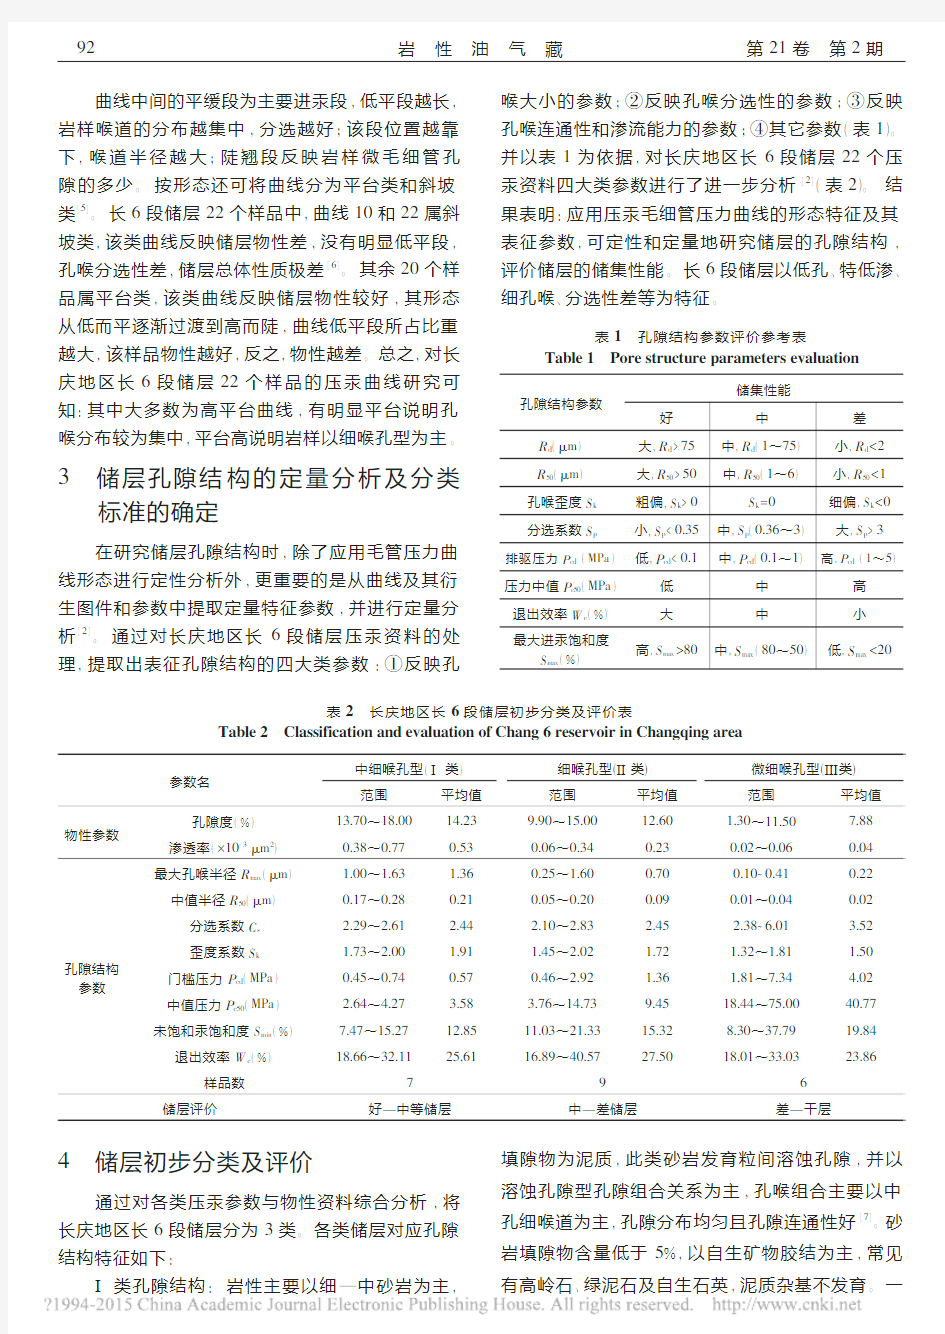 应用压汞资料对长庆地区长6段储层进行分类研究_李彦山